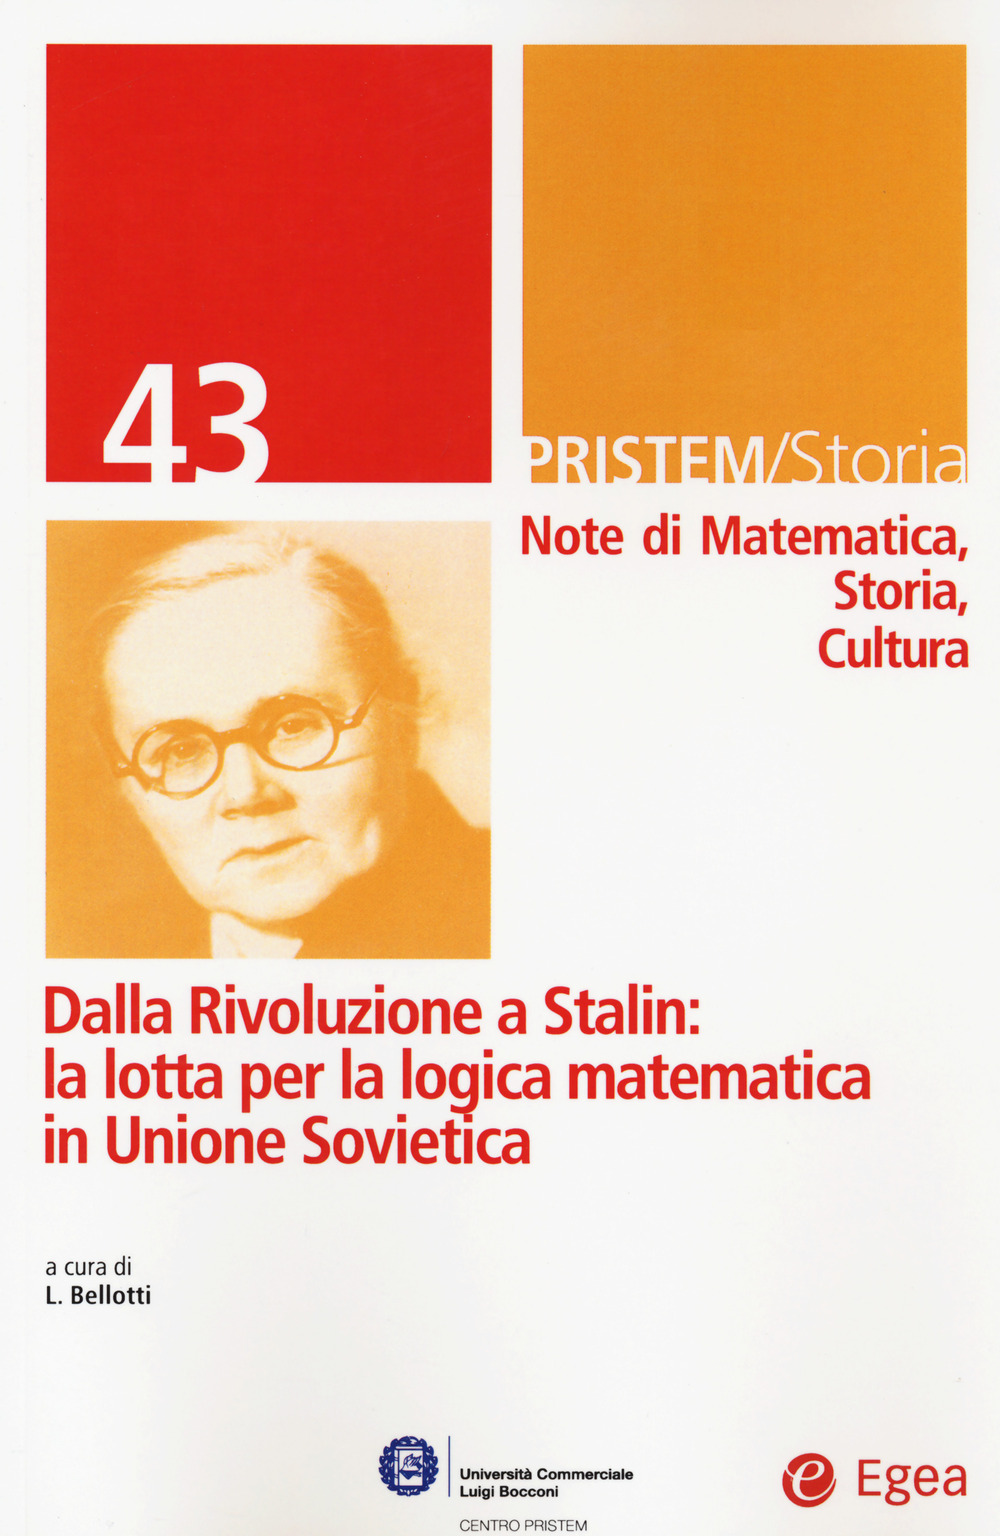 Image of Pristem storia. Note di matematica, storia, cultura. Vol. 43: Dalla rivoluzione a Stalin: la lotta per la logica matematica in Unione Sovietica.